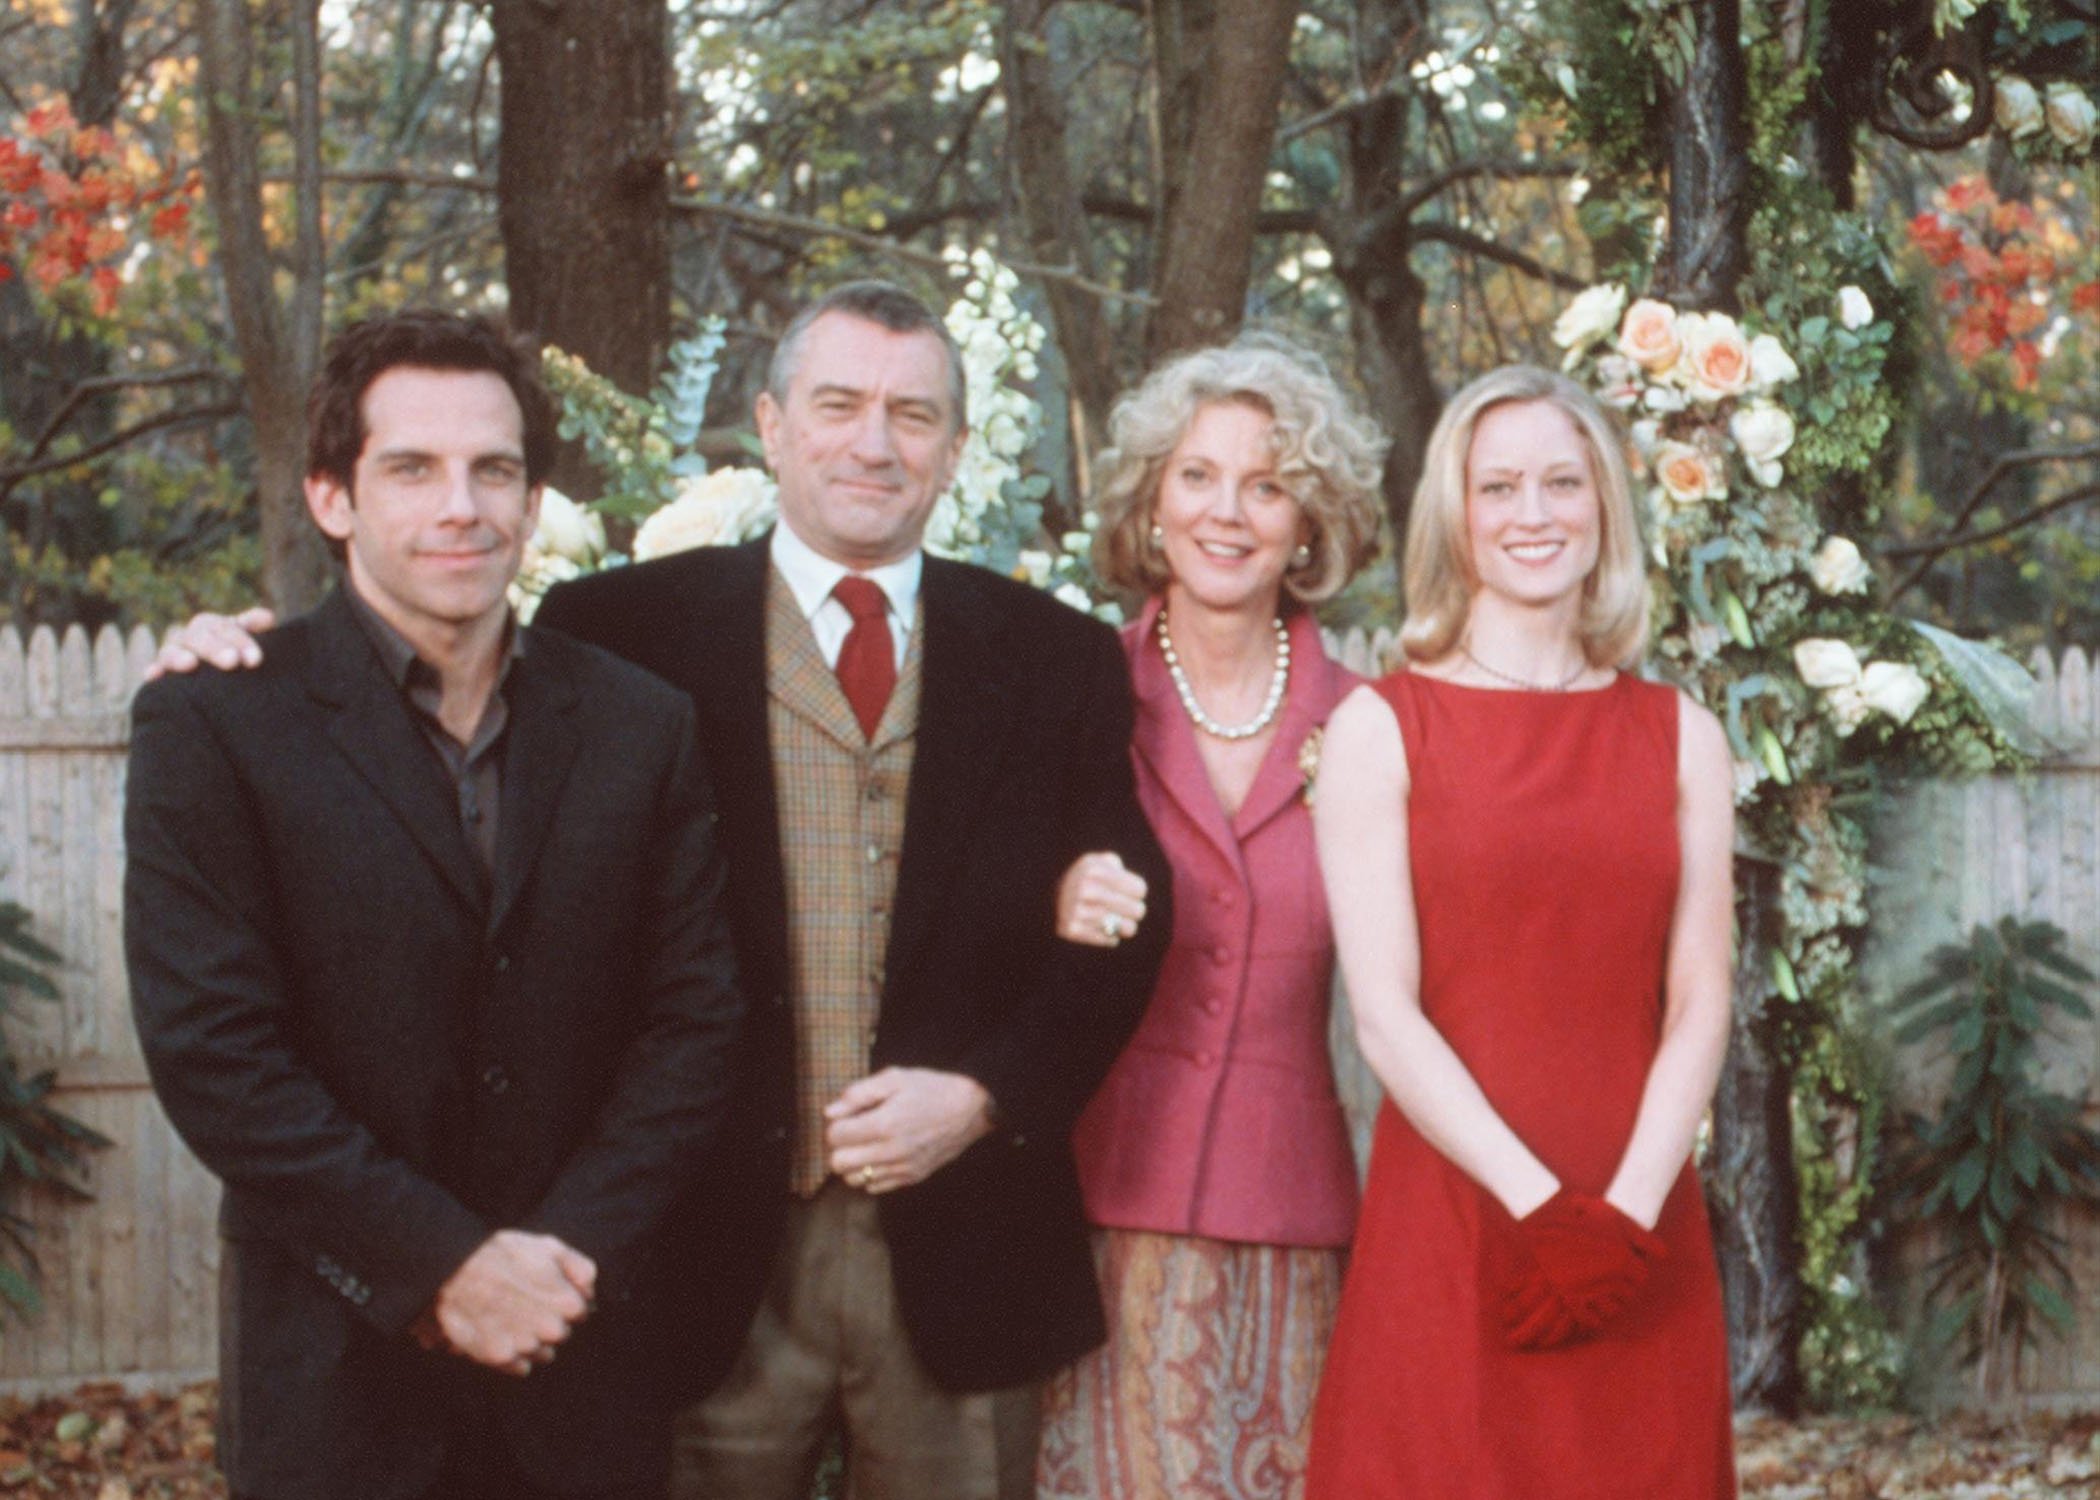 Ben Stiller, Robert De Niro, Blythe Danner, and Teri Polo in 'Meet the Parents'